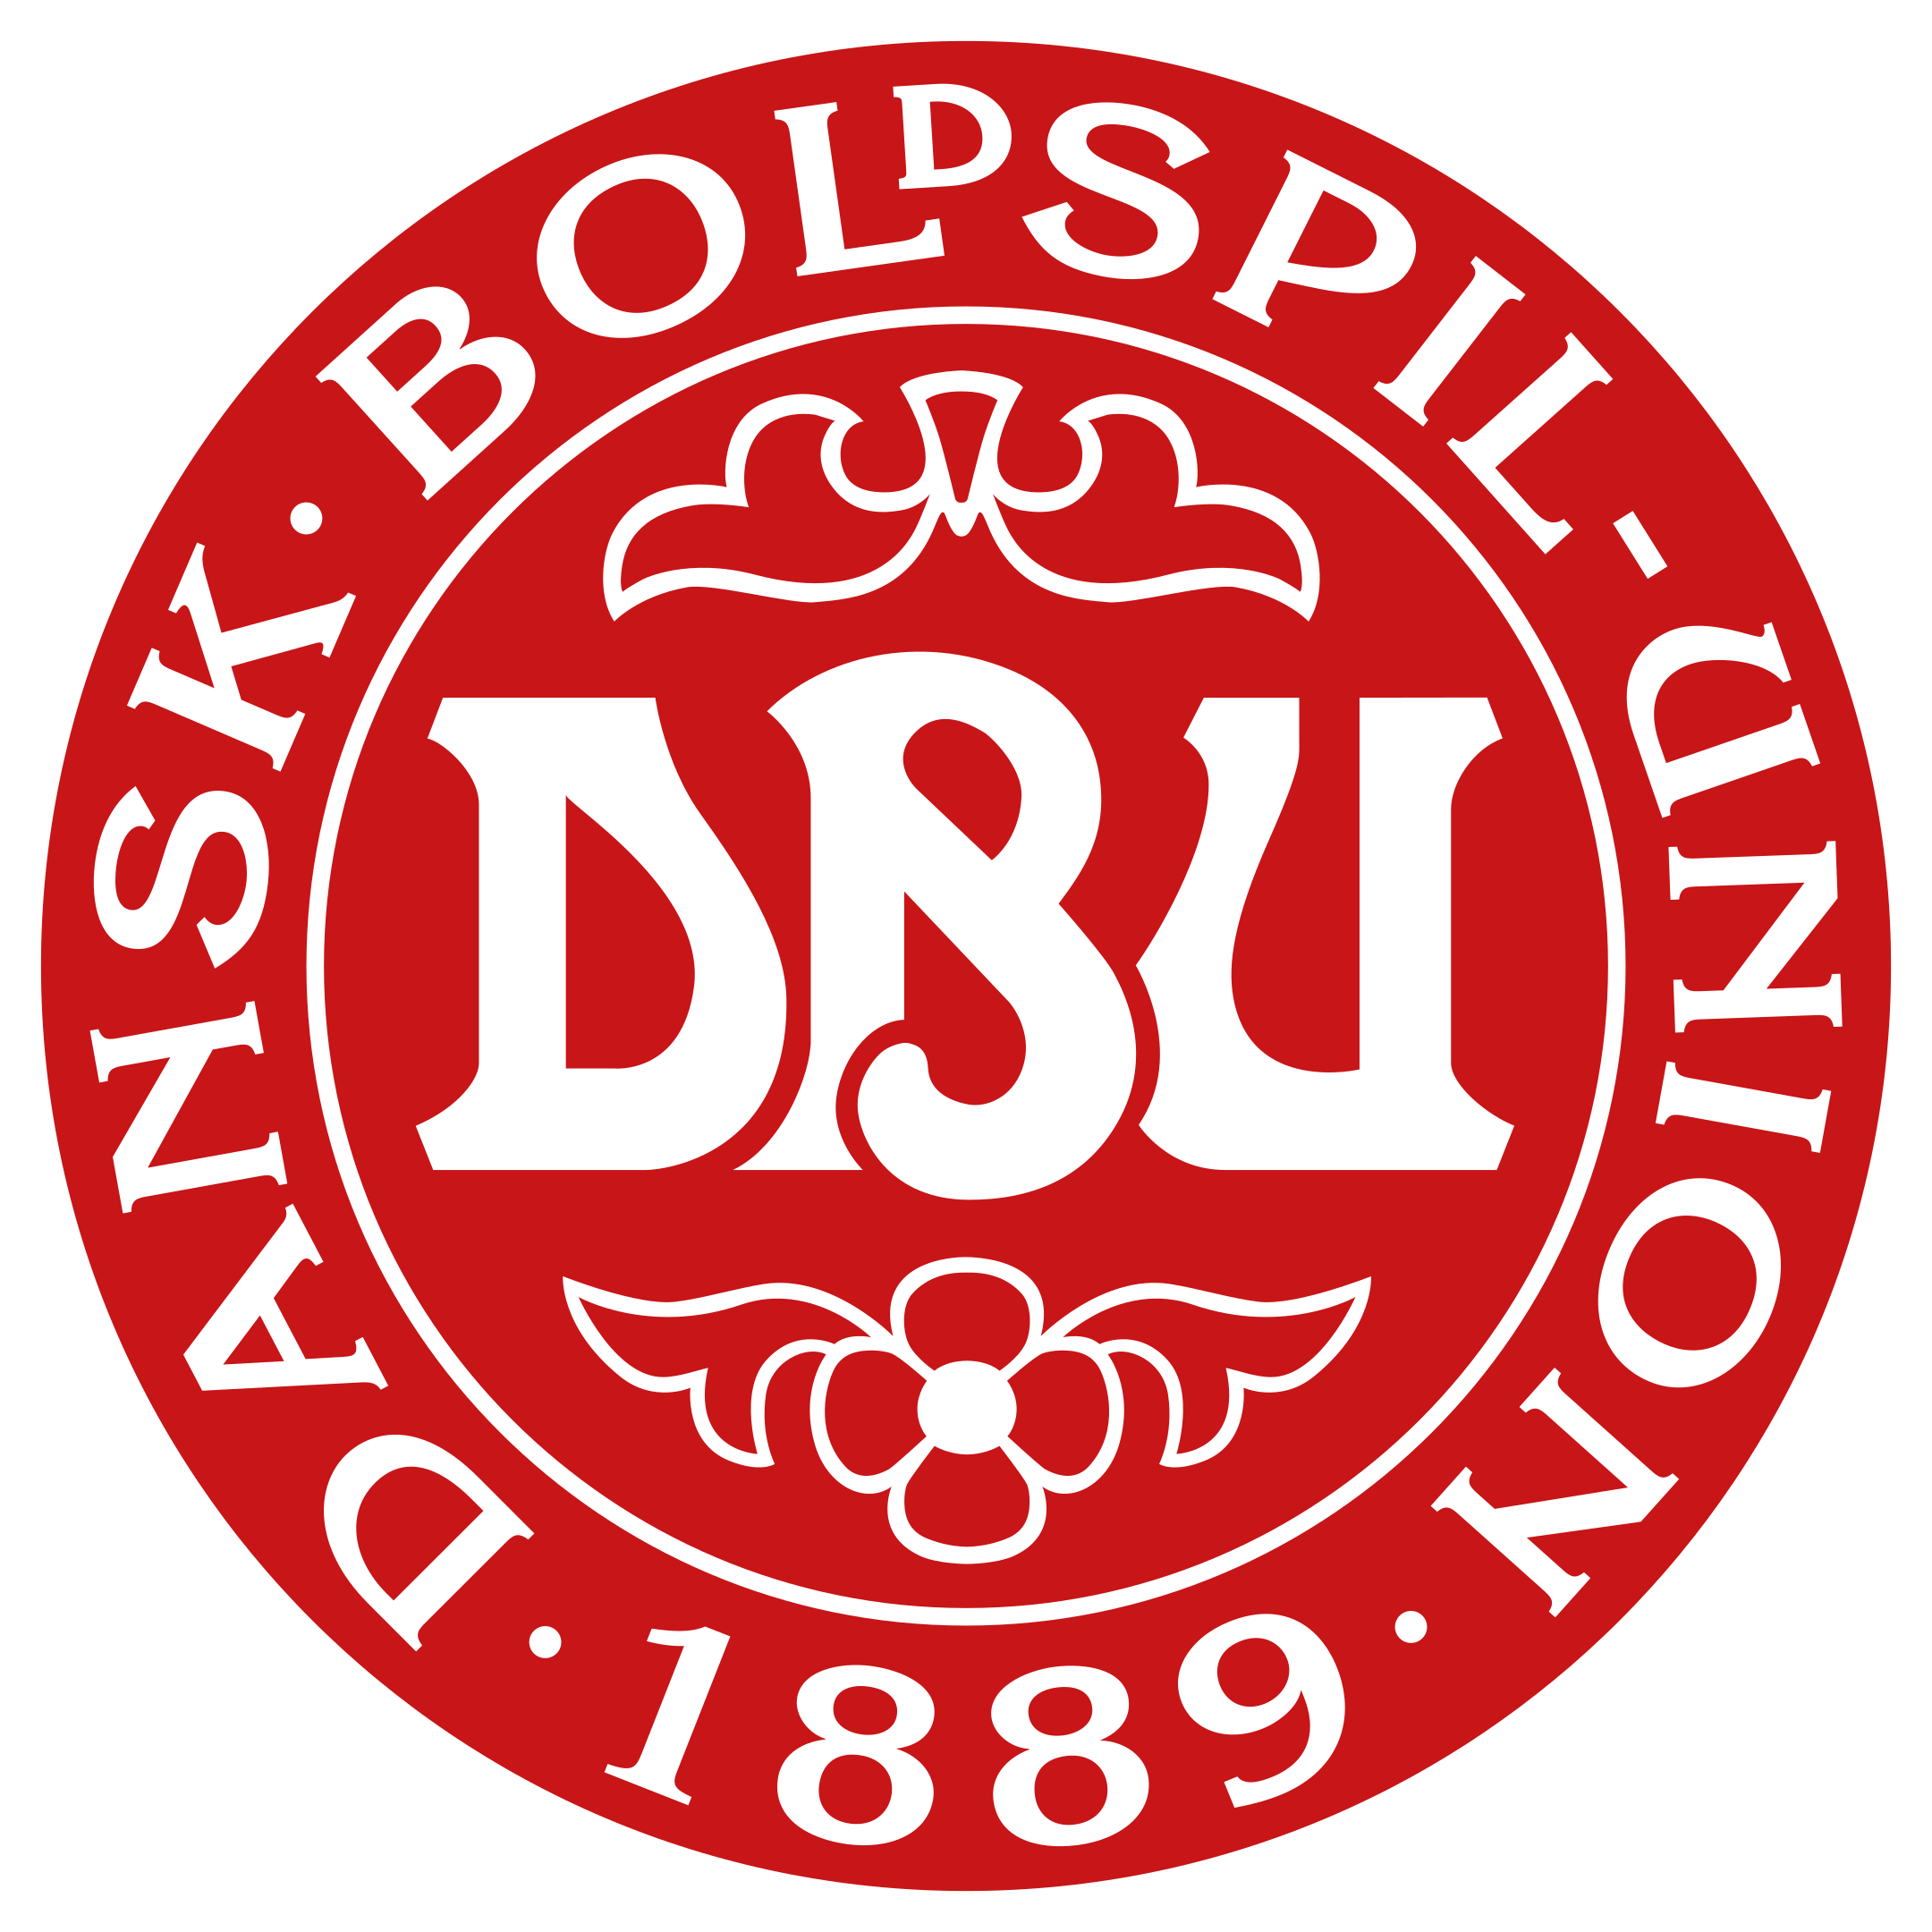 denmark national football team logo 1 - Denmark National Football Team Logo